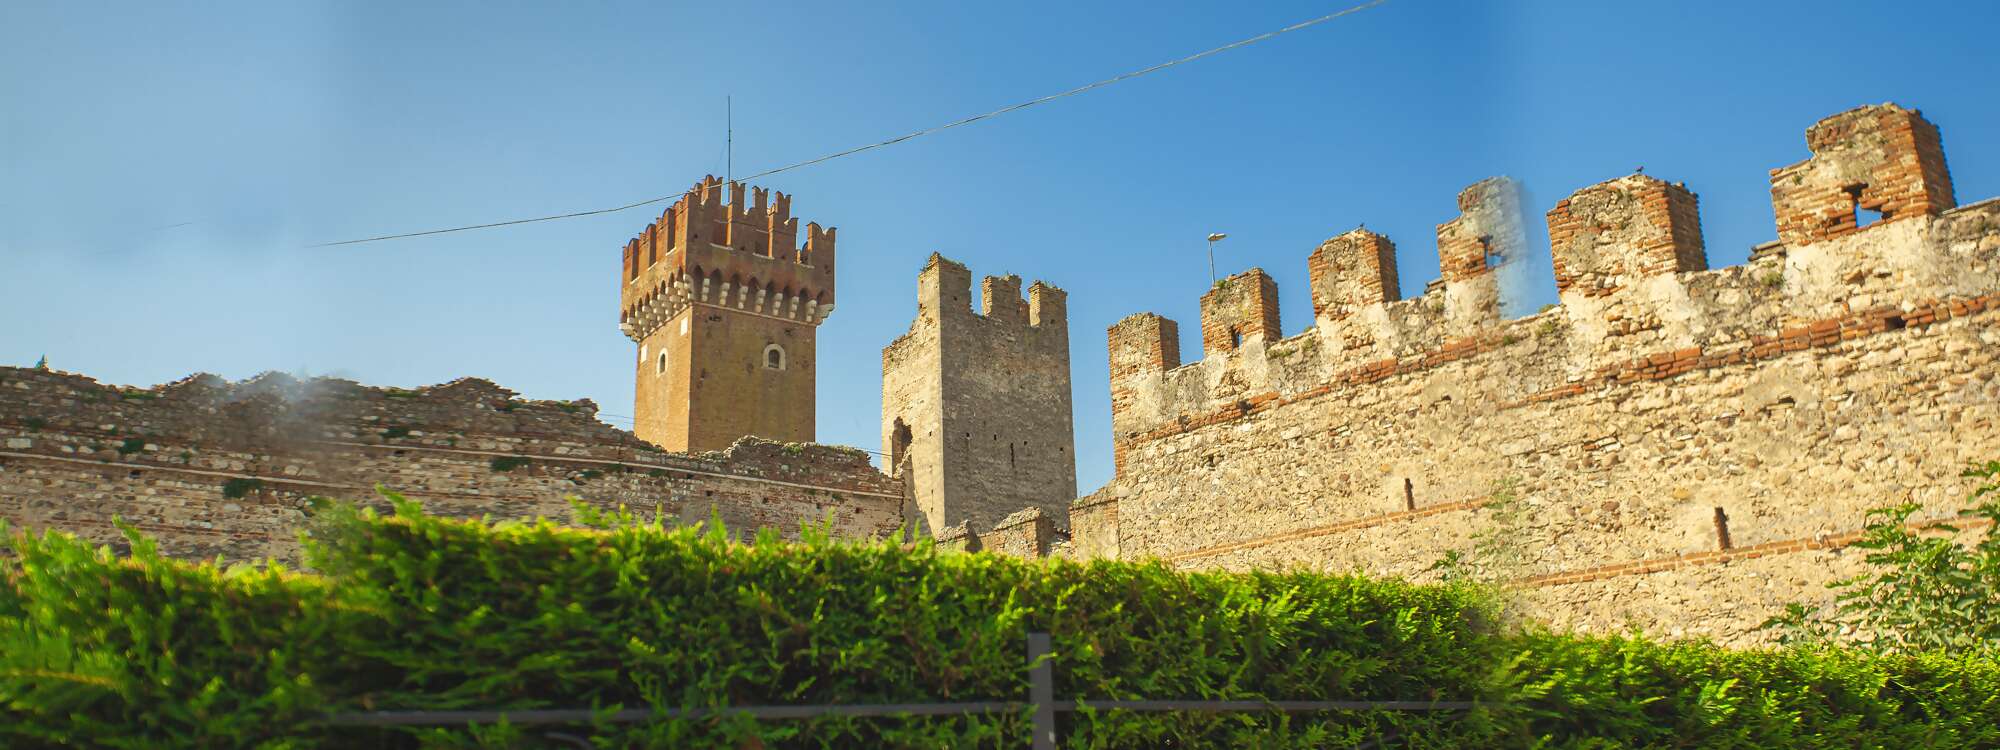 Das Castello Scaligero ist eine mittelalterliche Burg, die am östlichen Ufer des Gardasees in Lazise liegt.